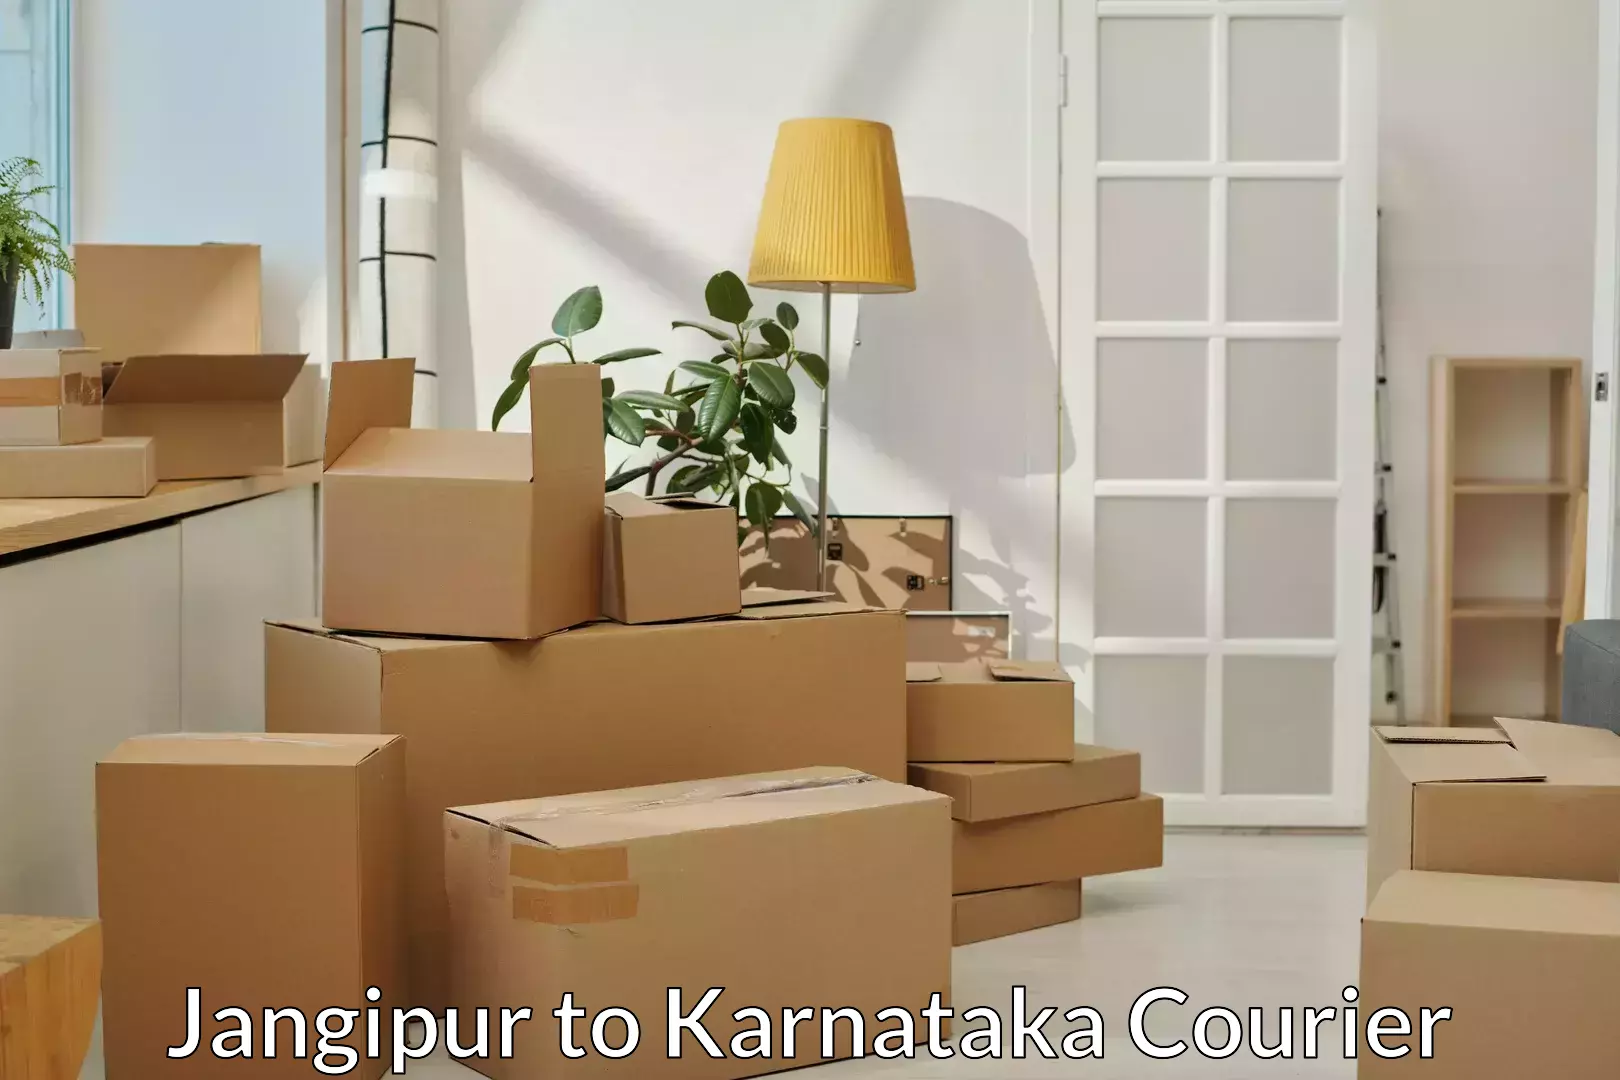 Reliable goods transport in Jangipur to Karnataka